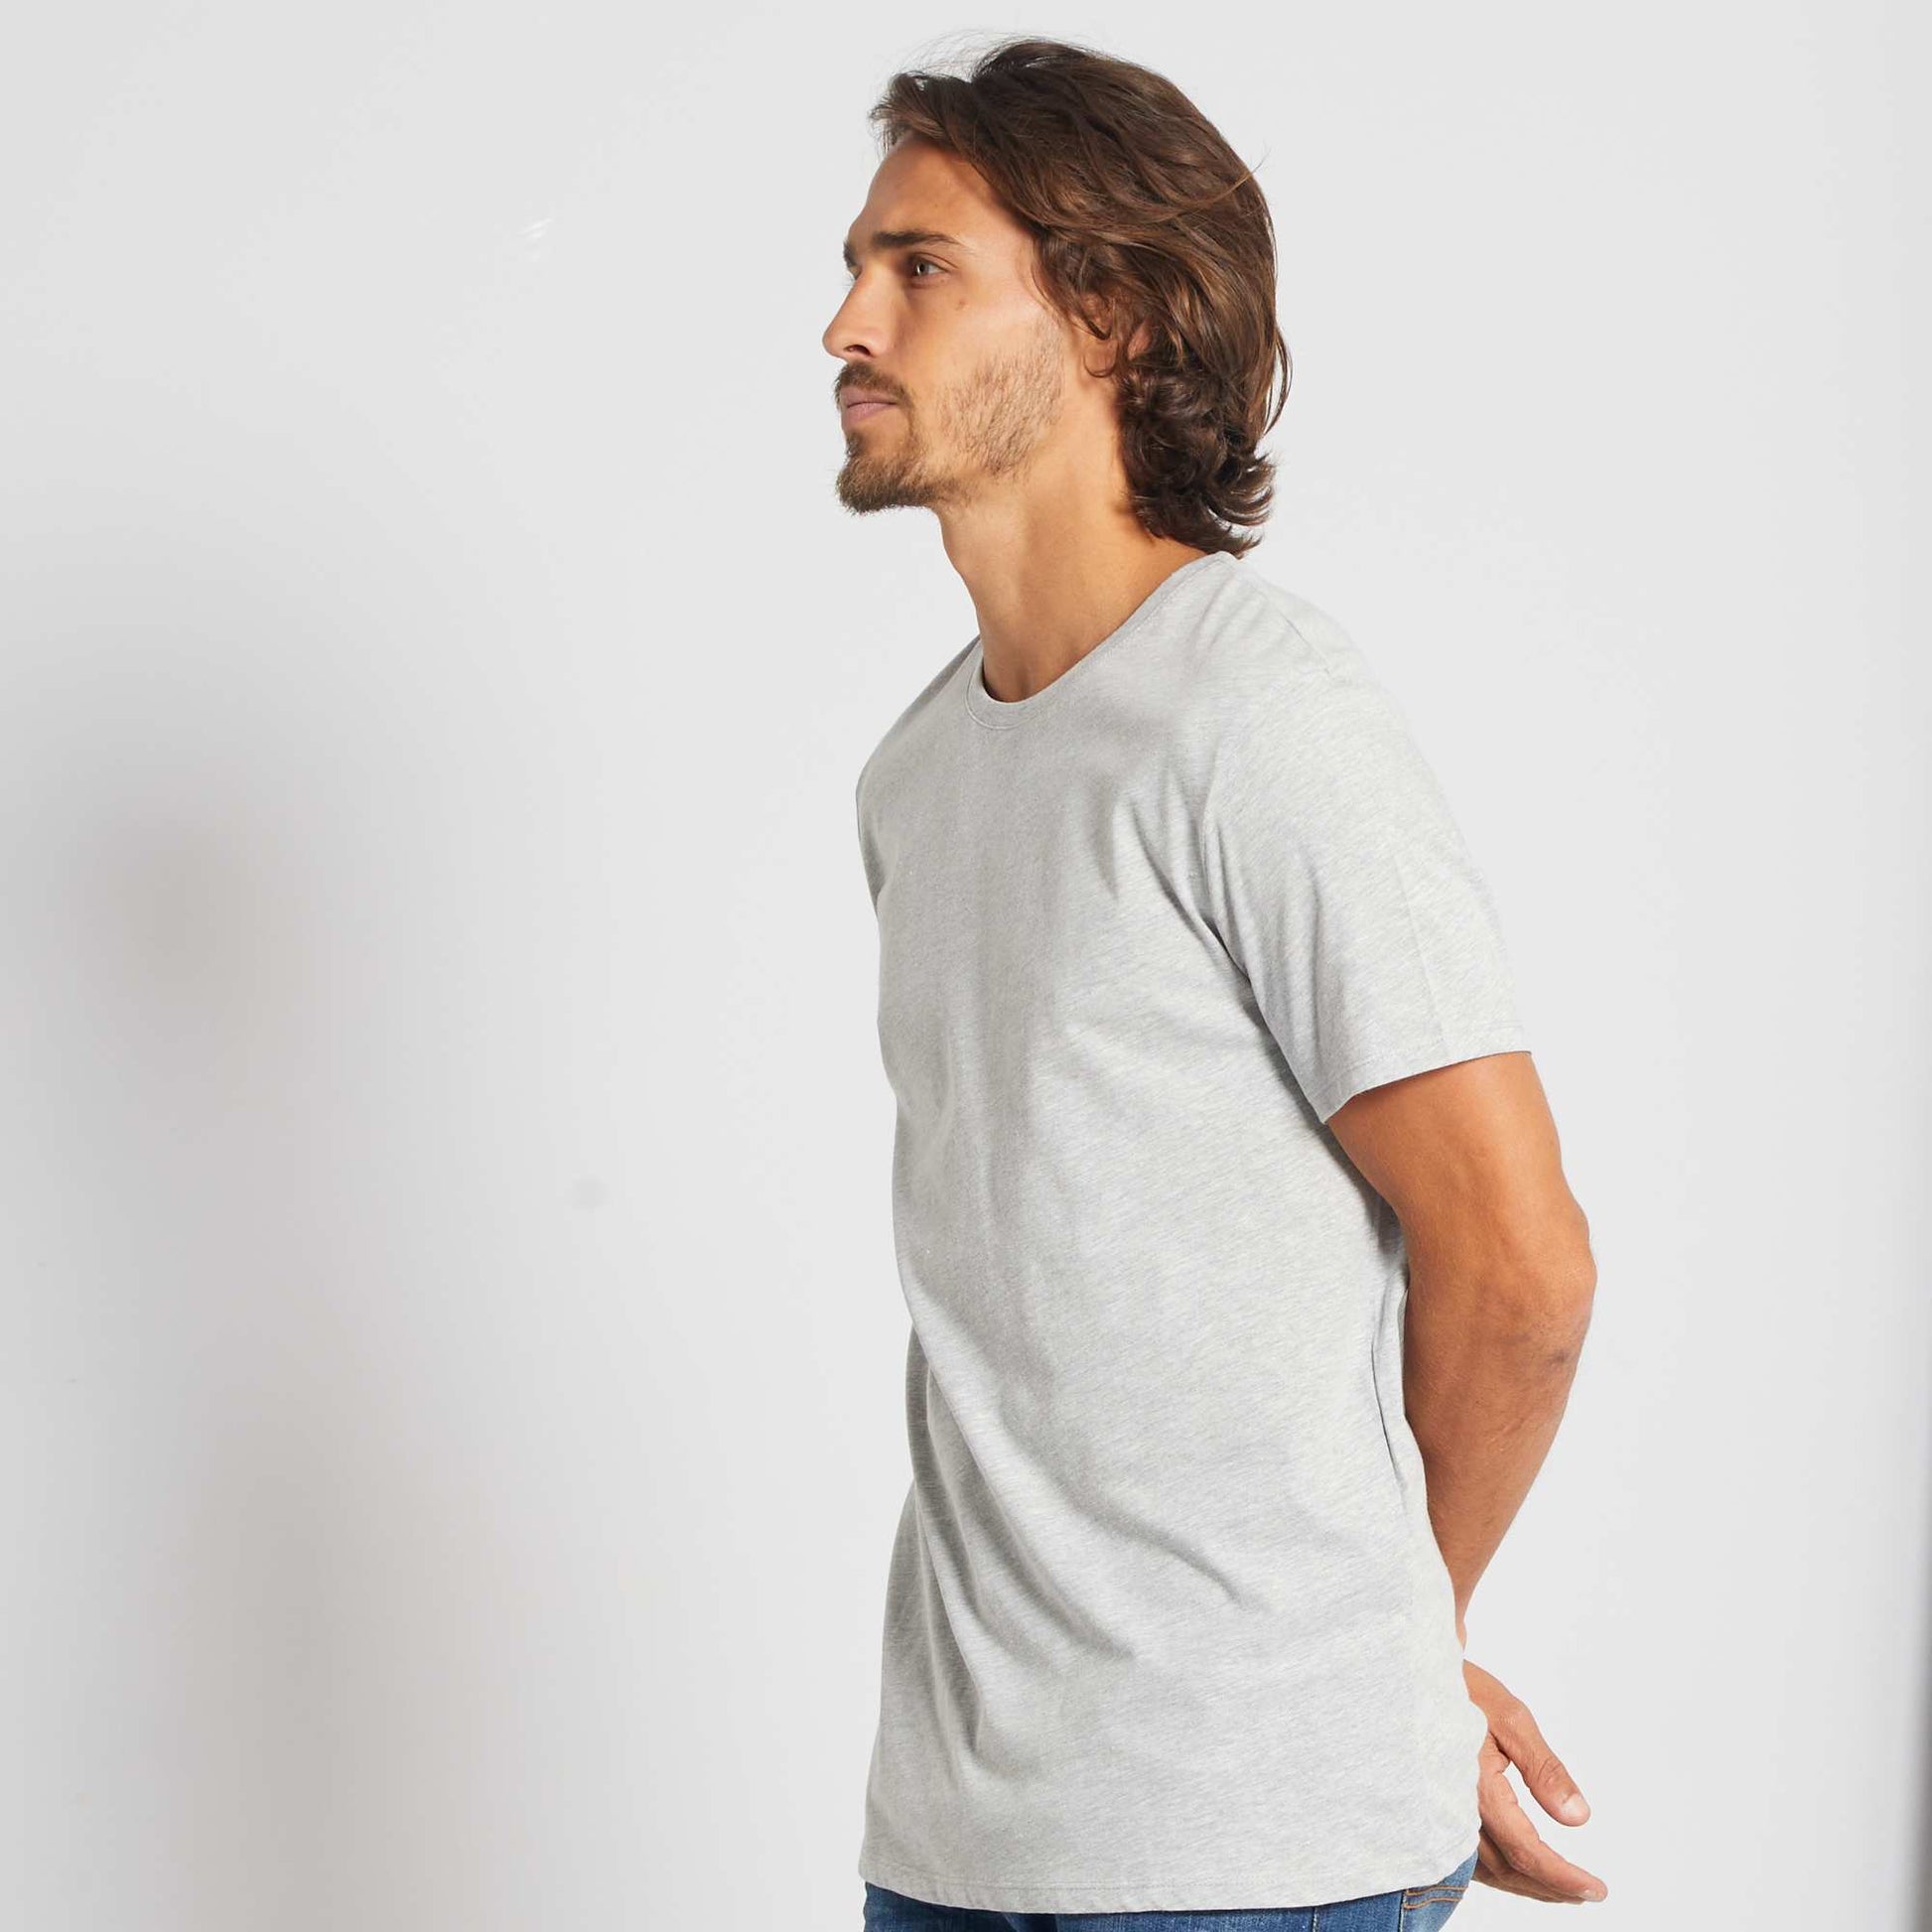 T-shirt confortable en jersey simple - fraise+noir+blanc+gris clair  chiné+bleu foncé